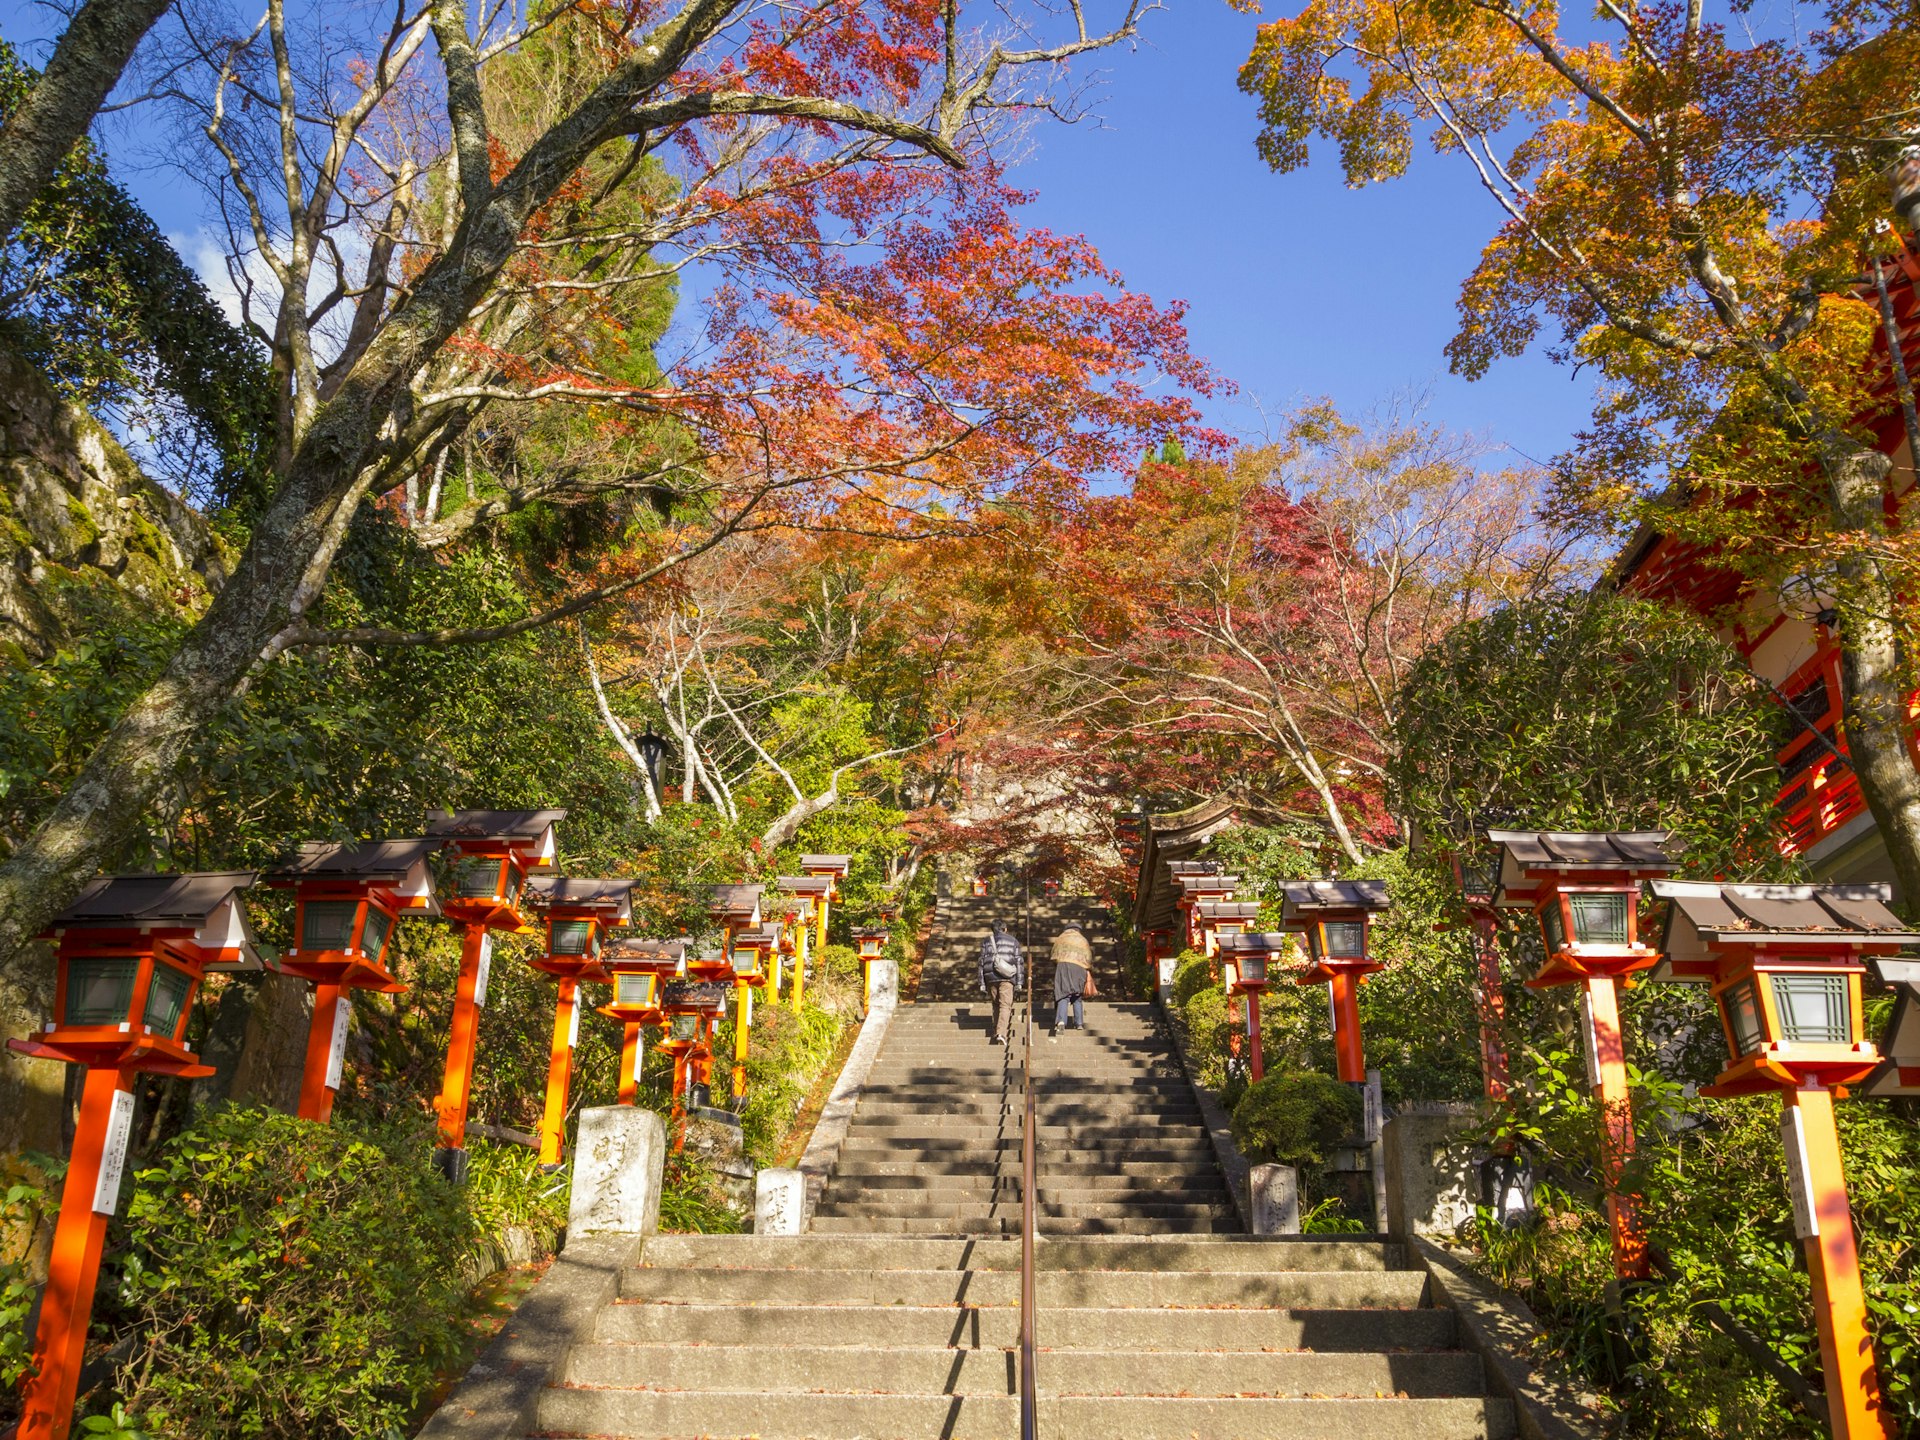 Stairs to the Kurama-dera temple in fall